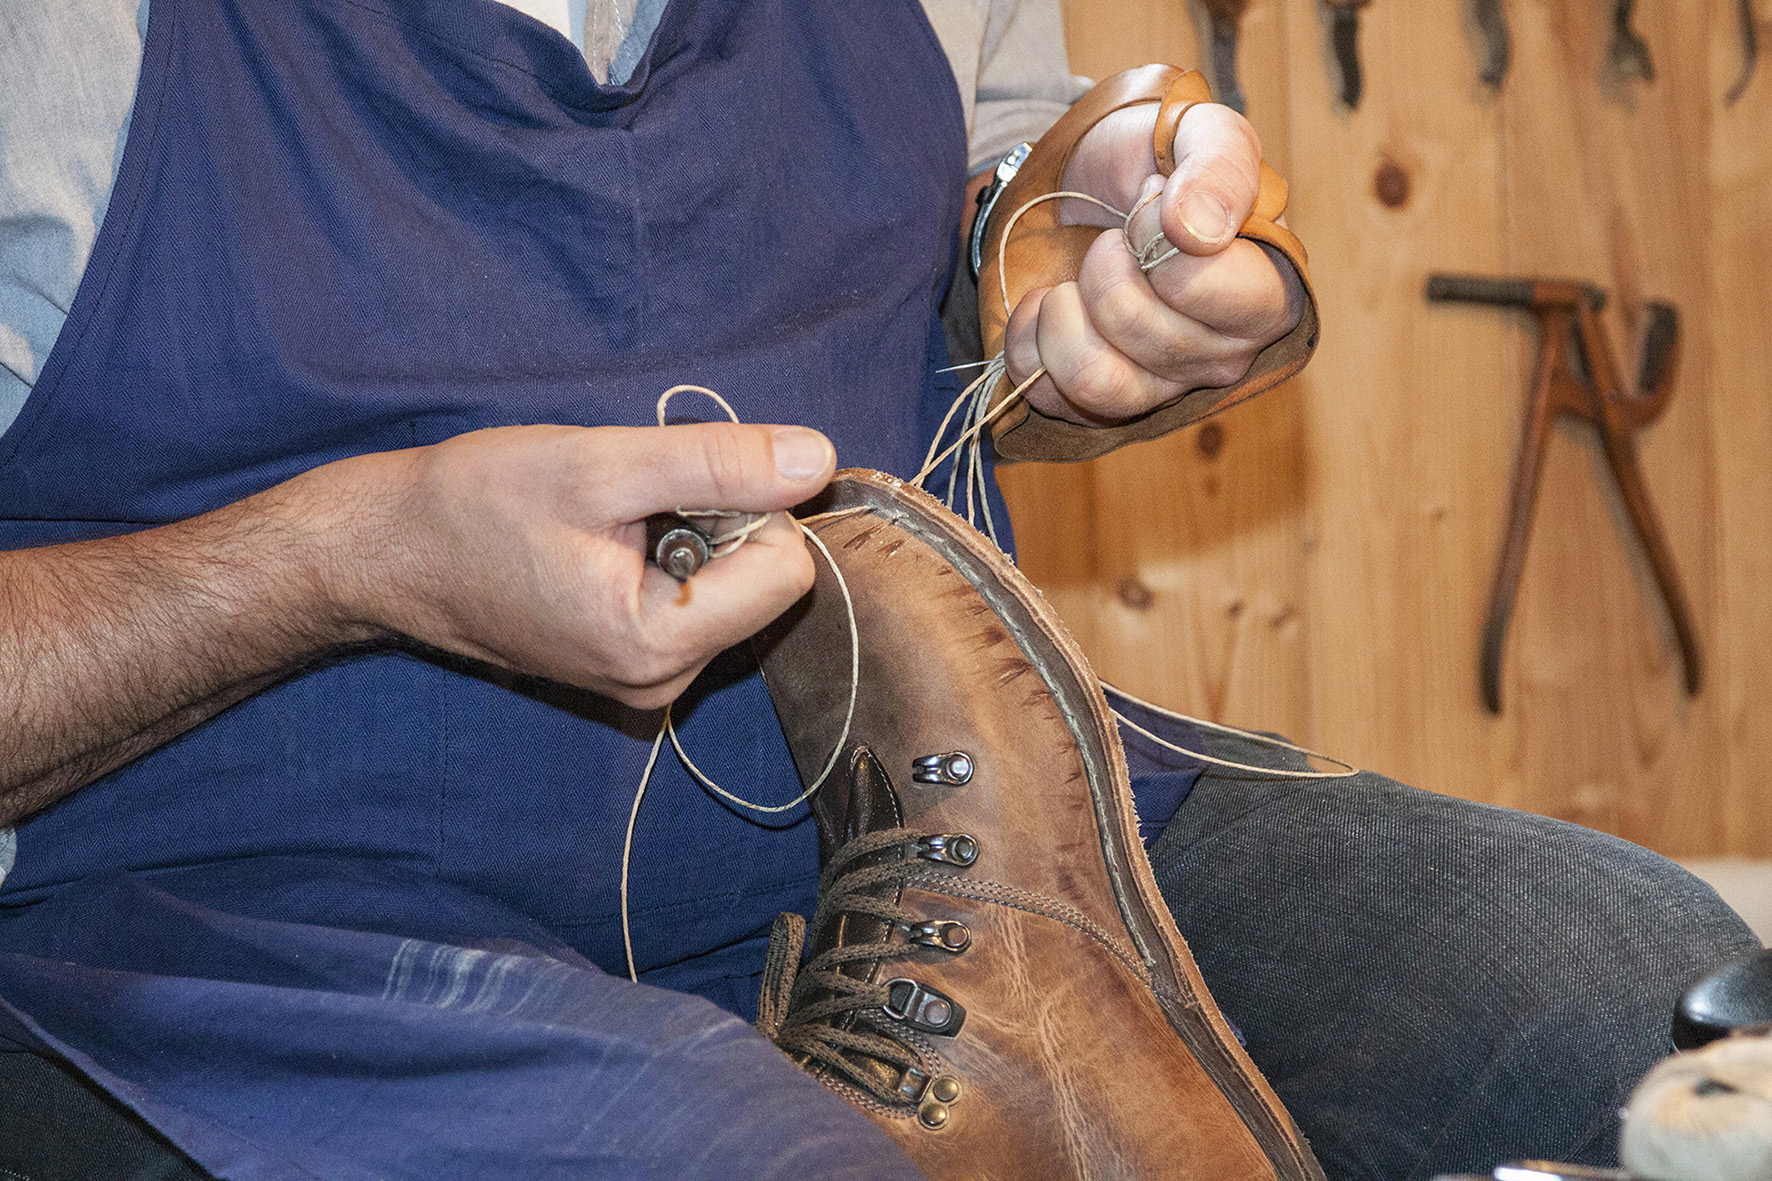 Schuhe, bei denen die Sohle bricht, sind ein weitverbreitetes Ärgernis. Wohl dem, der seine Schuhe bei einem Schuhmachermeister wie Andreas Ortner neu besohlen lassen kann.